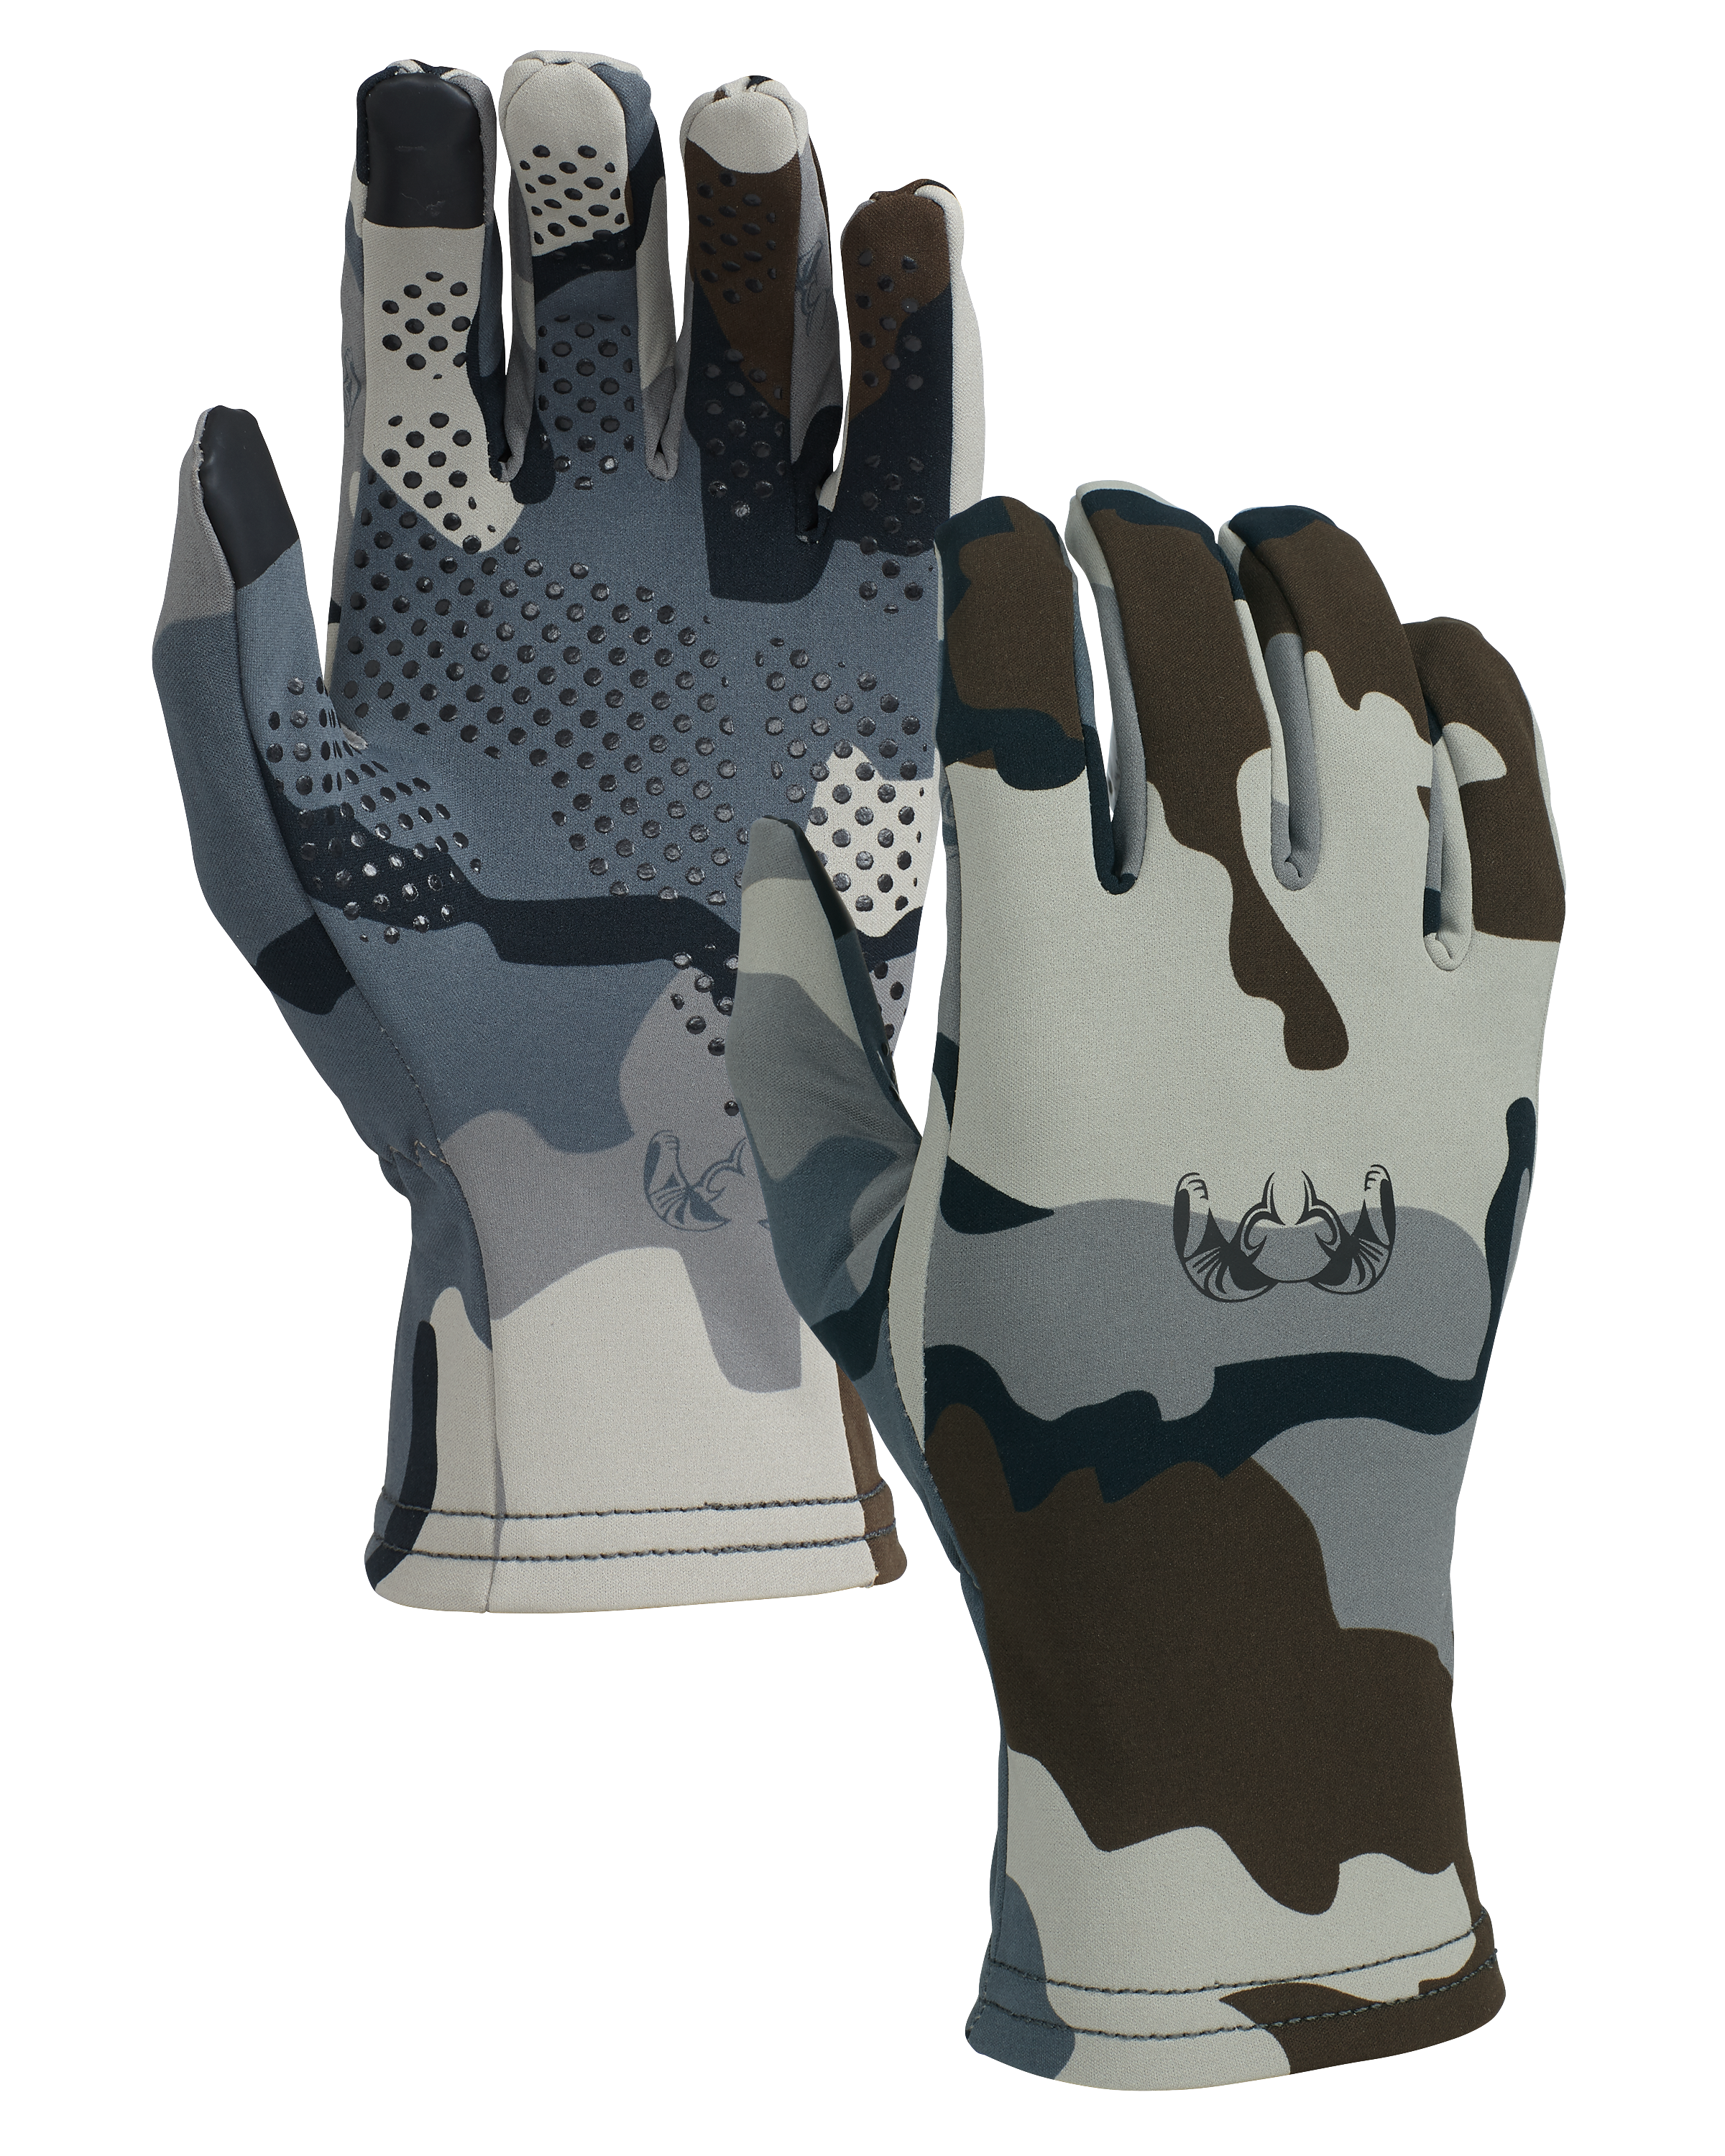 KUIU StrongFleece 220 Glove in Vias | Size 2XL